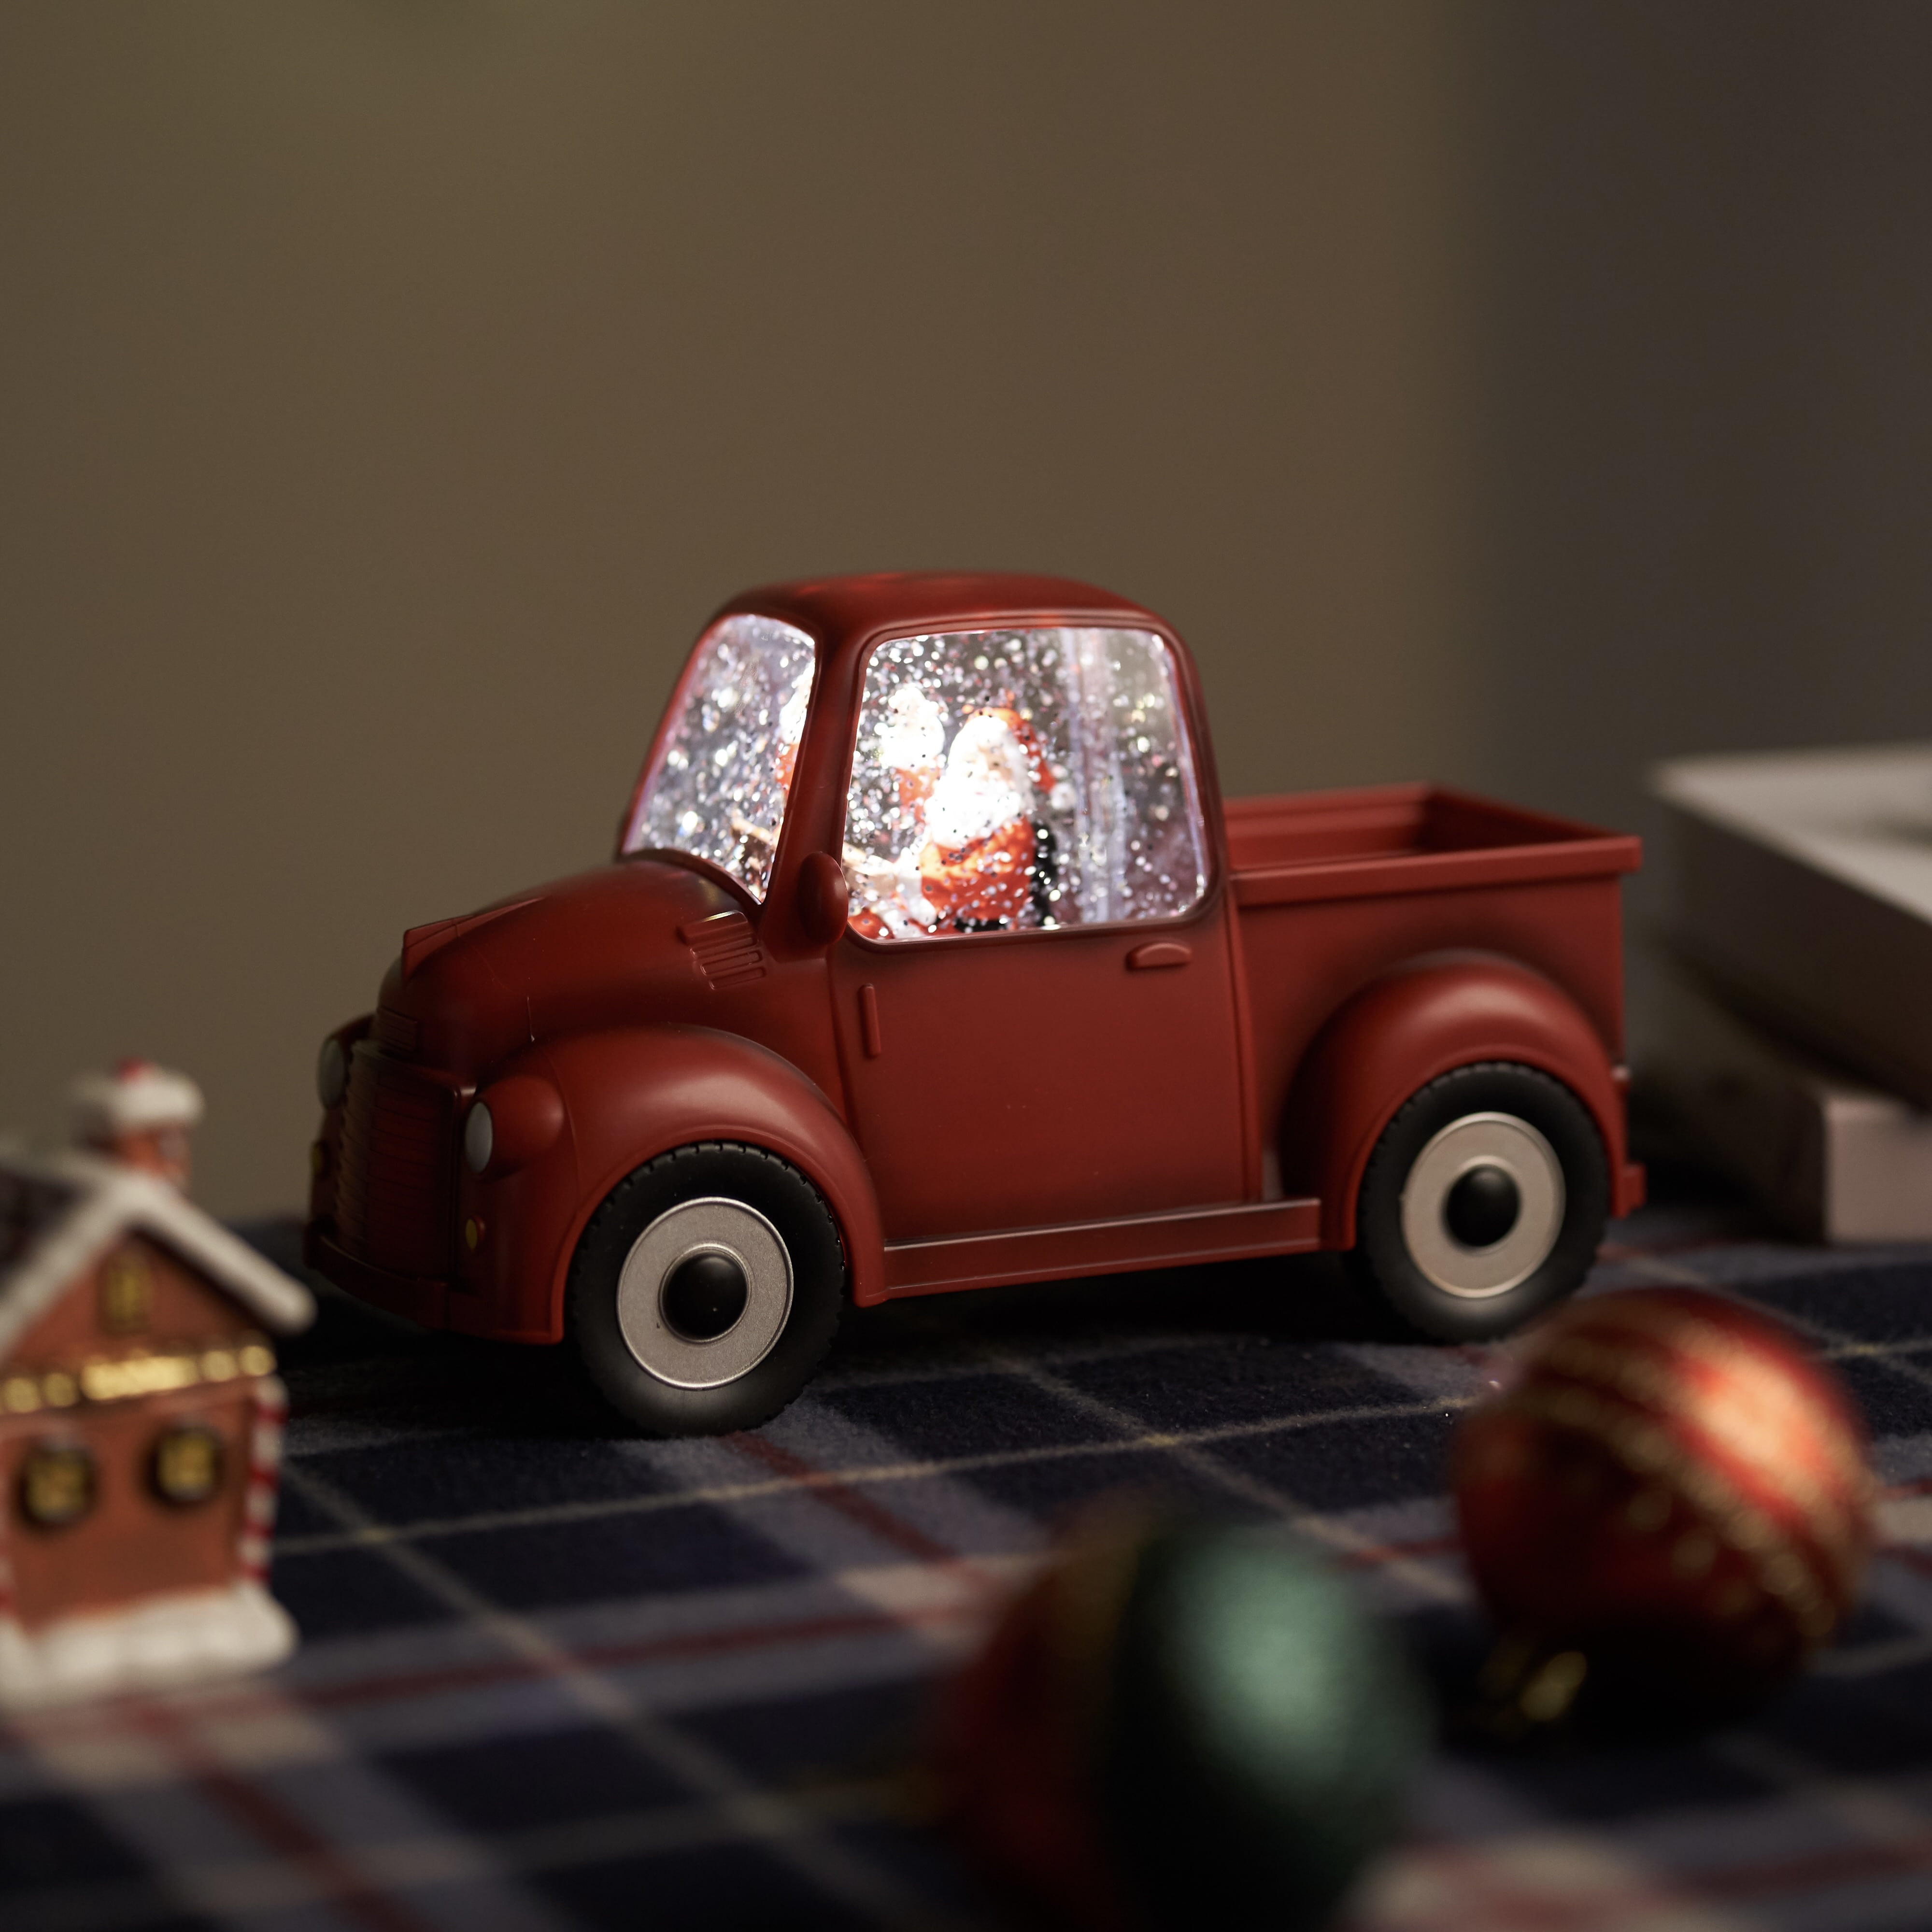 크리스마스 픽업트럭 자동차 오르골 워터볼 LED 조명 인테리어소품 선물